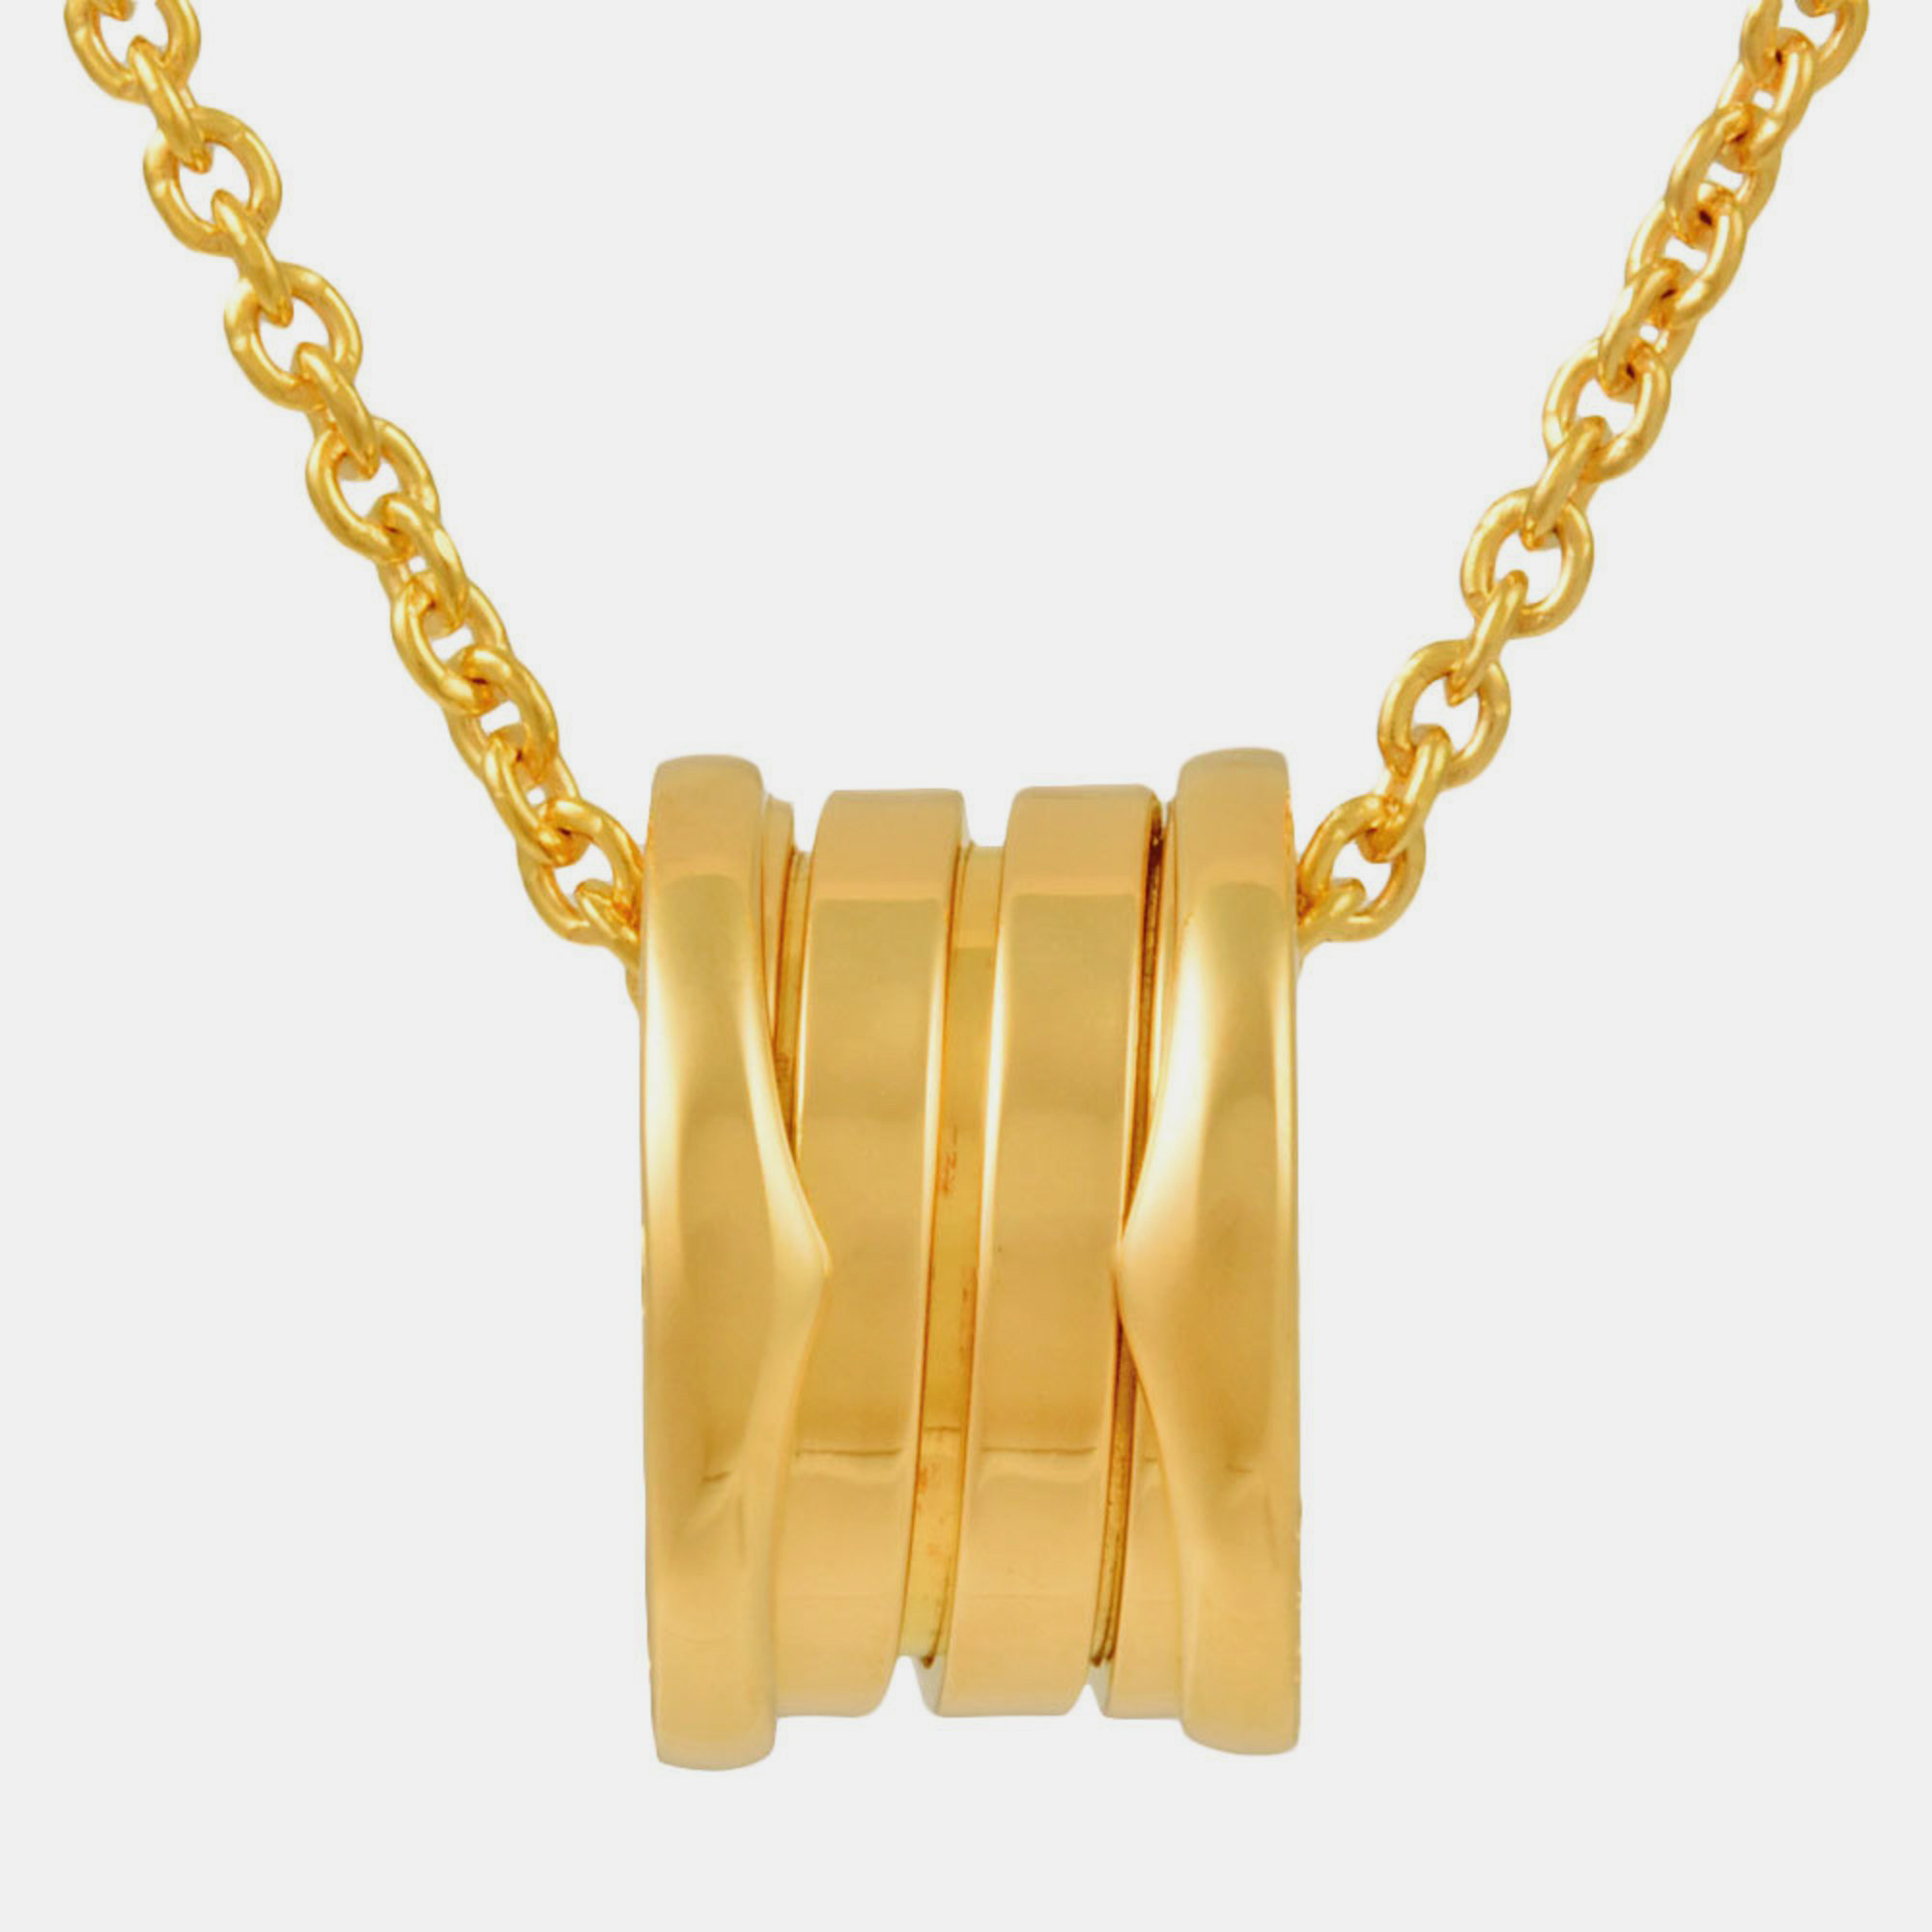 Bvlgari B.Zero1 18K Yellow Gold Necklace